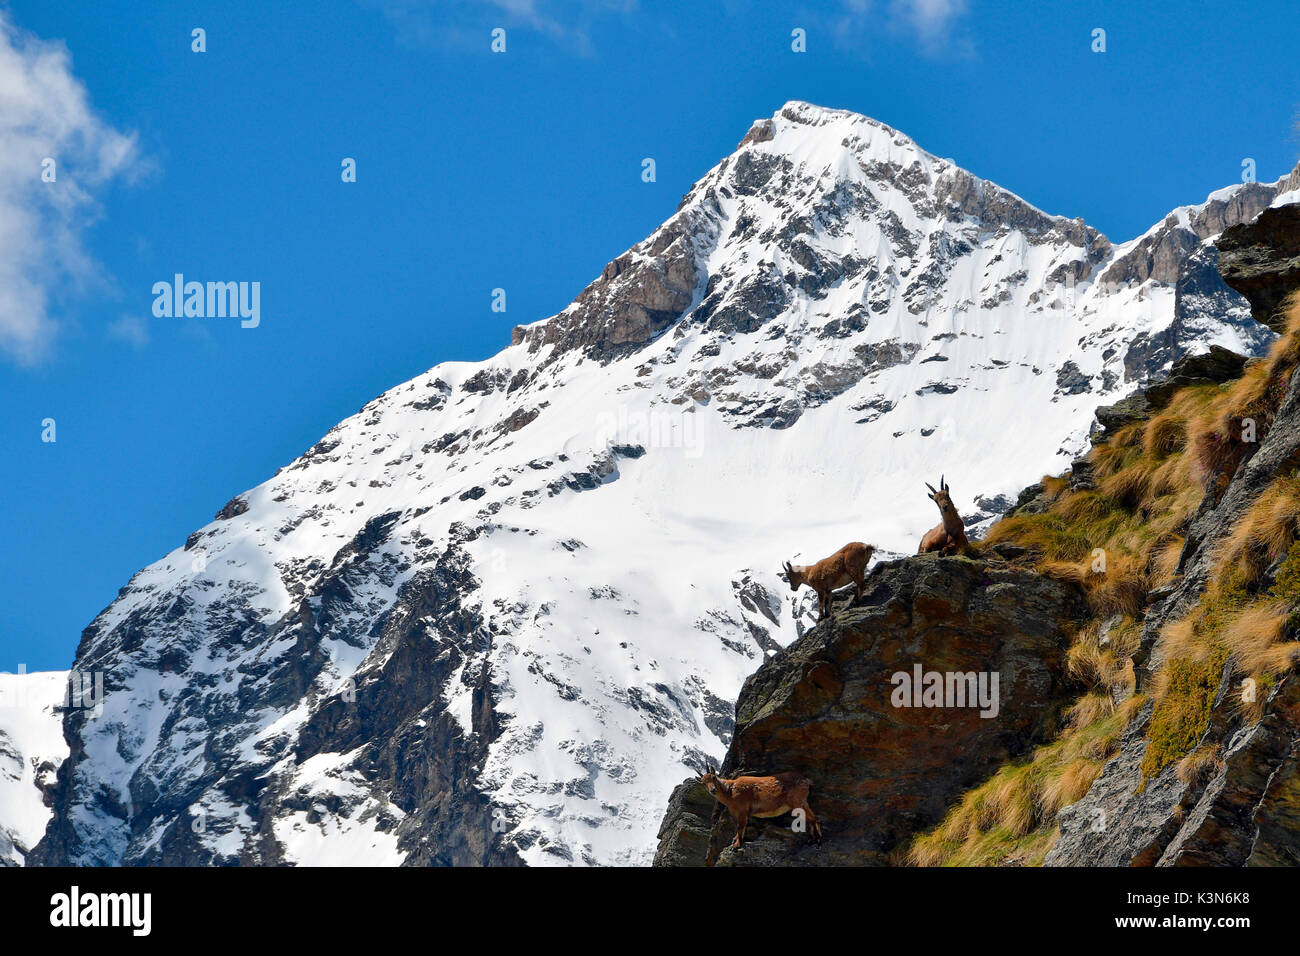 Steinböcke in einem steilen Hang, Valtournenche, Italien Aosta Tal. Stockfoto